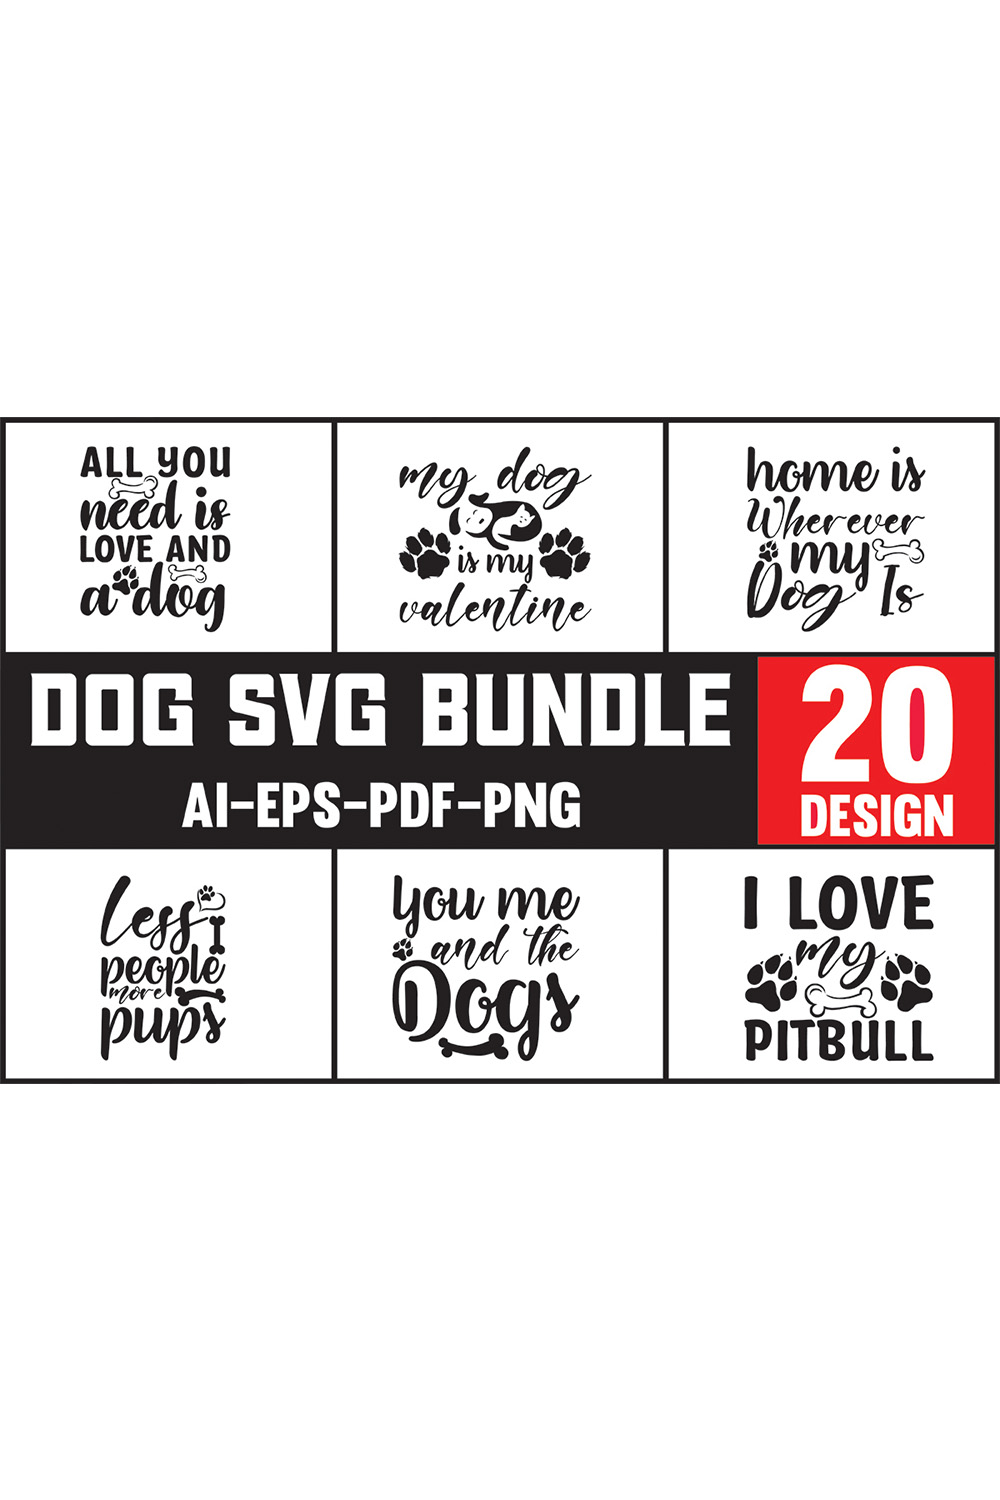 Dog svg bundle with 20 designs.